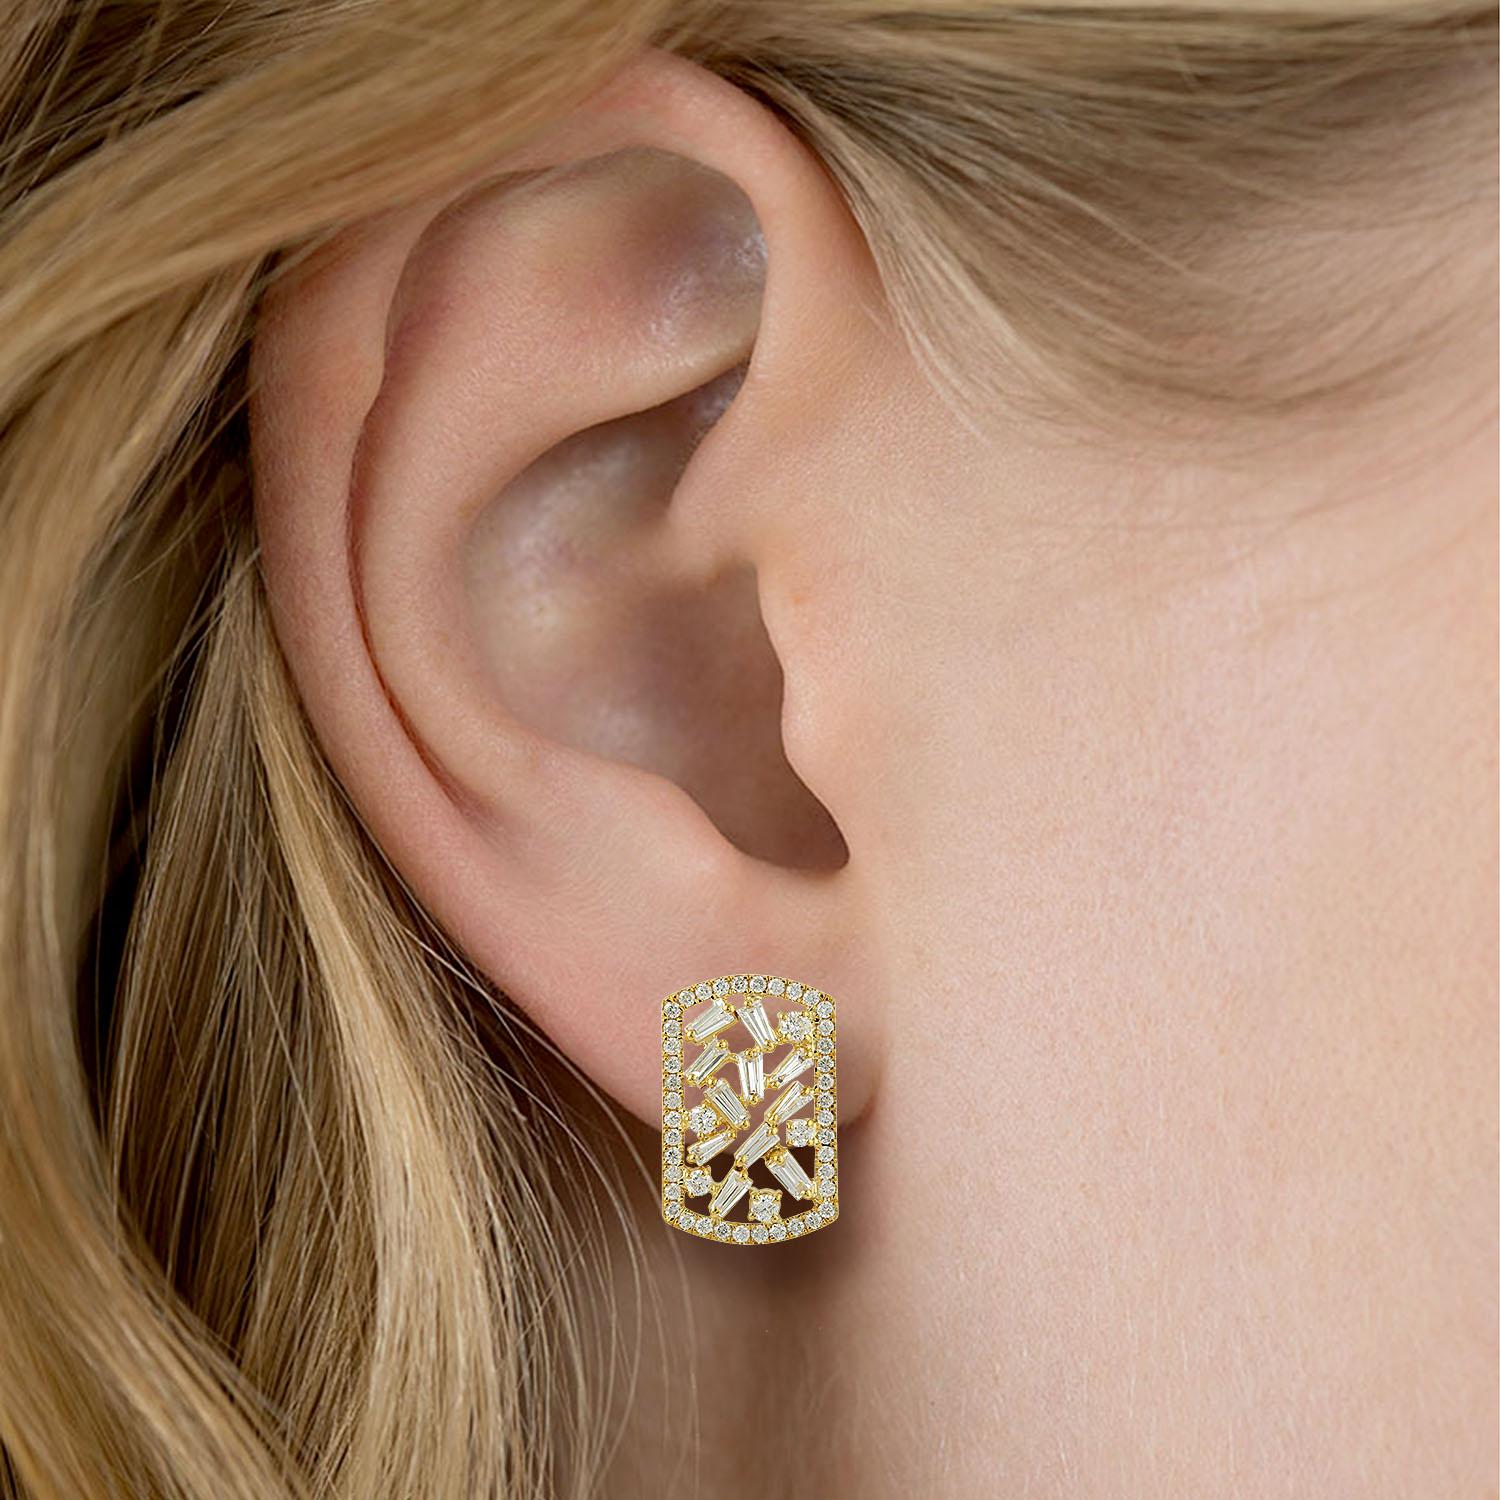 Ces boucles d'oreilles sont fabriquées à la main en or 18 carats et serties de 1,1 carat de diamants baguettes étincelants. 

SUIVRE  La vitrine de MEGHNA JEWELS pour découvrir la dernière collection et les pièces exclusives.  MEGHNA JEWELS est